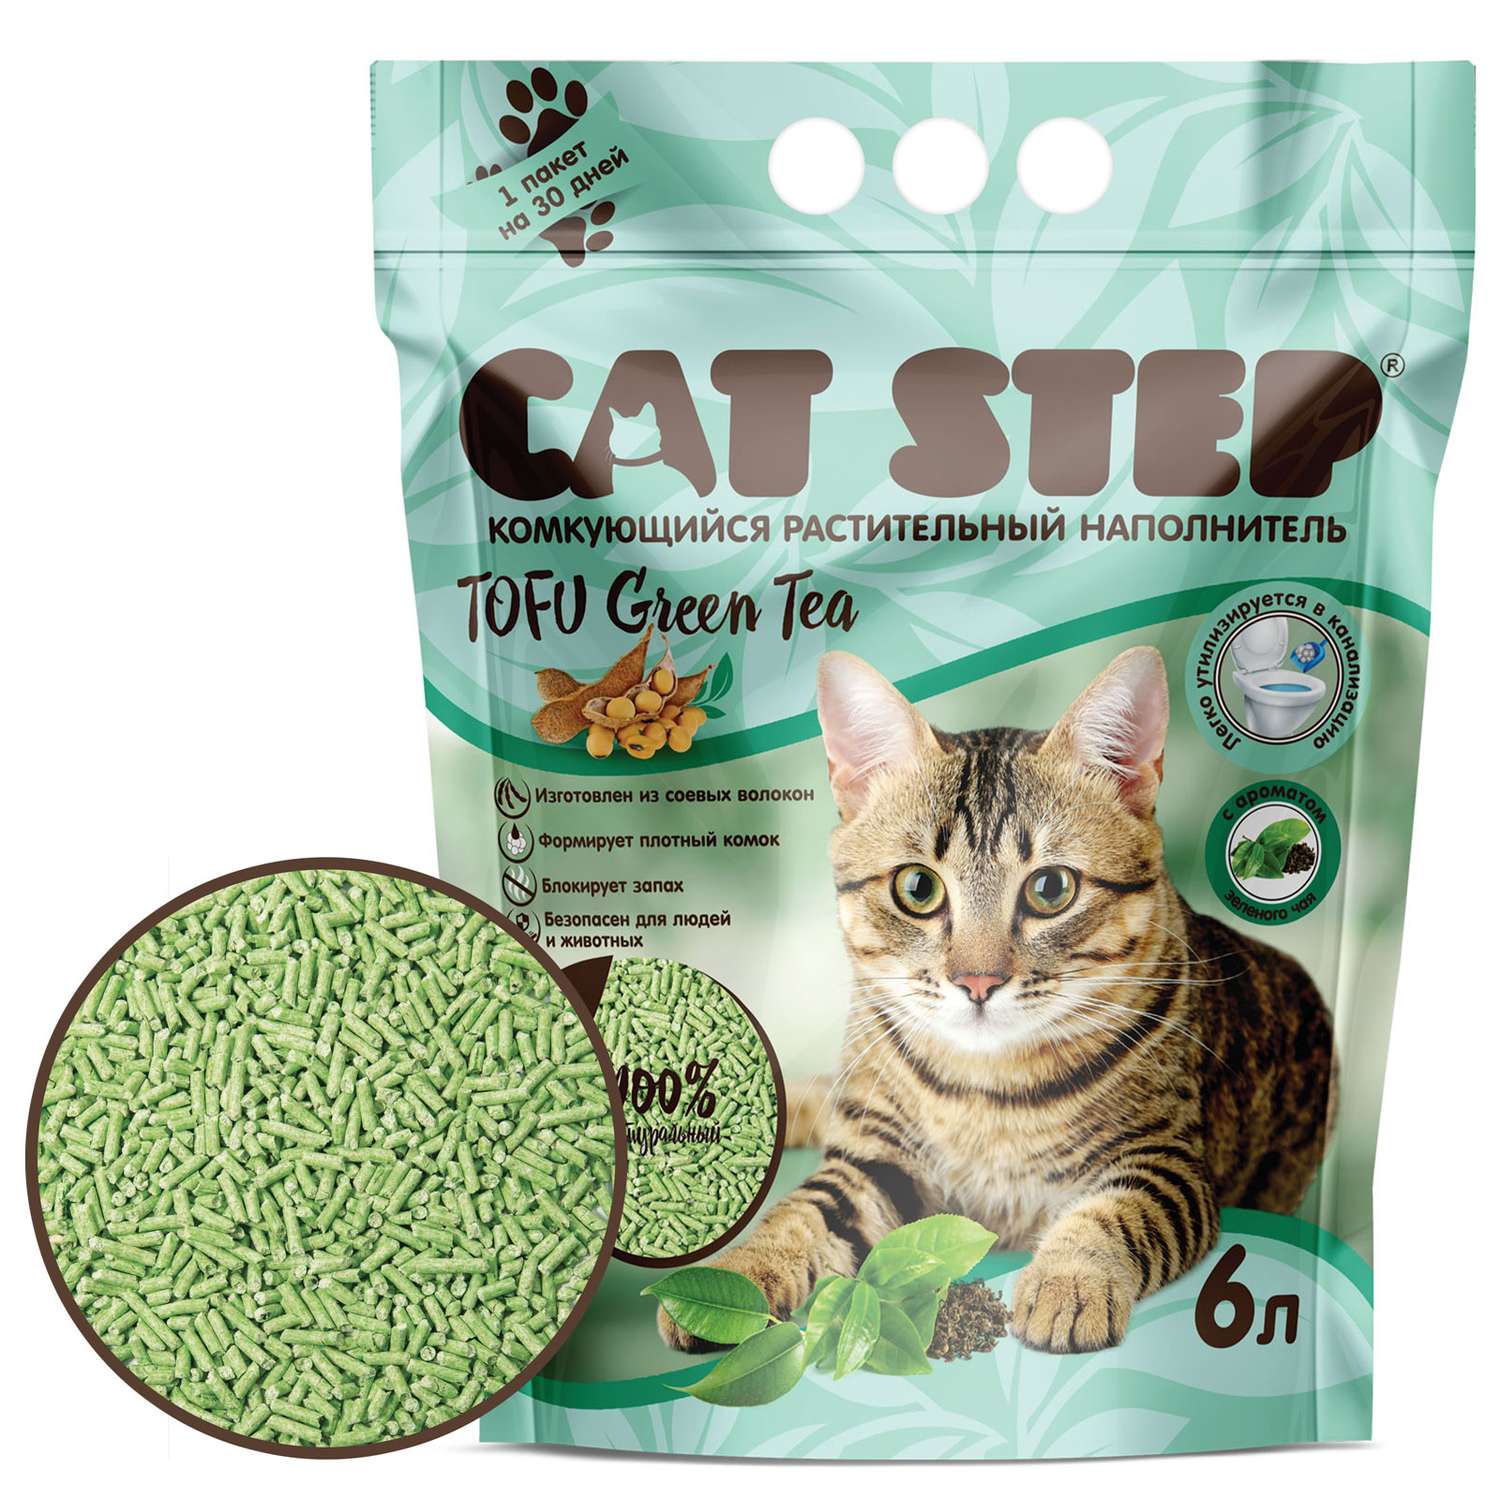 Наполнитель для кошек Cat Step Tofu Green Tea растительный комкующийся 6л - фото 3